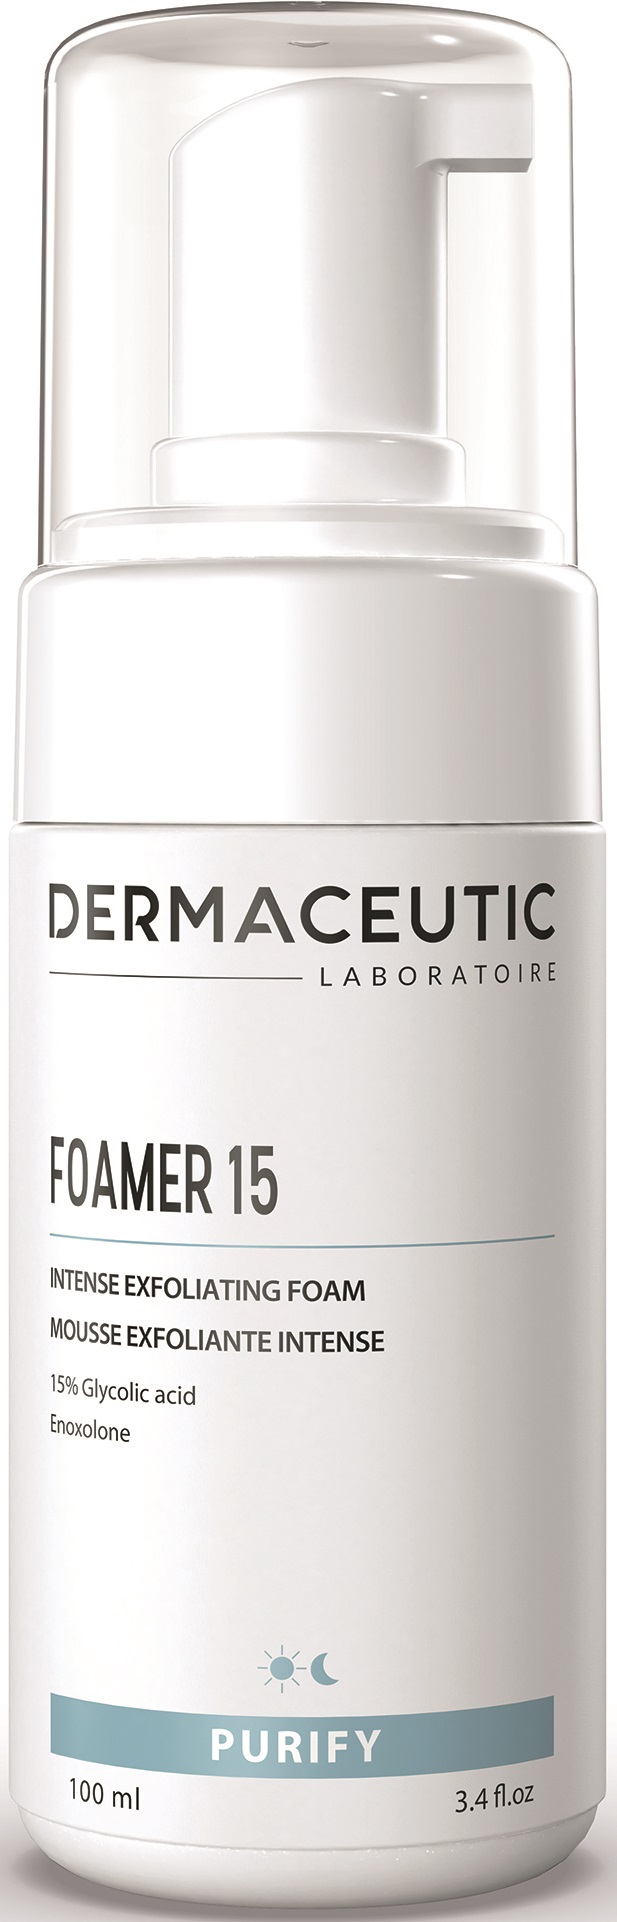 Dermaceutic Foamer 15 100ml